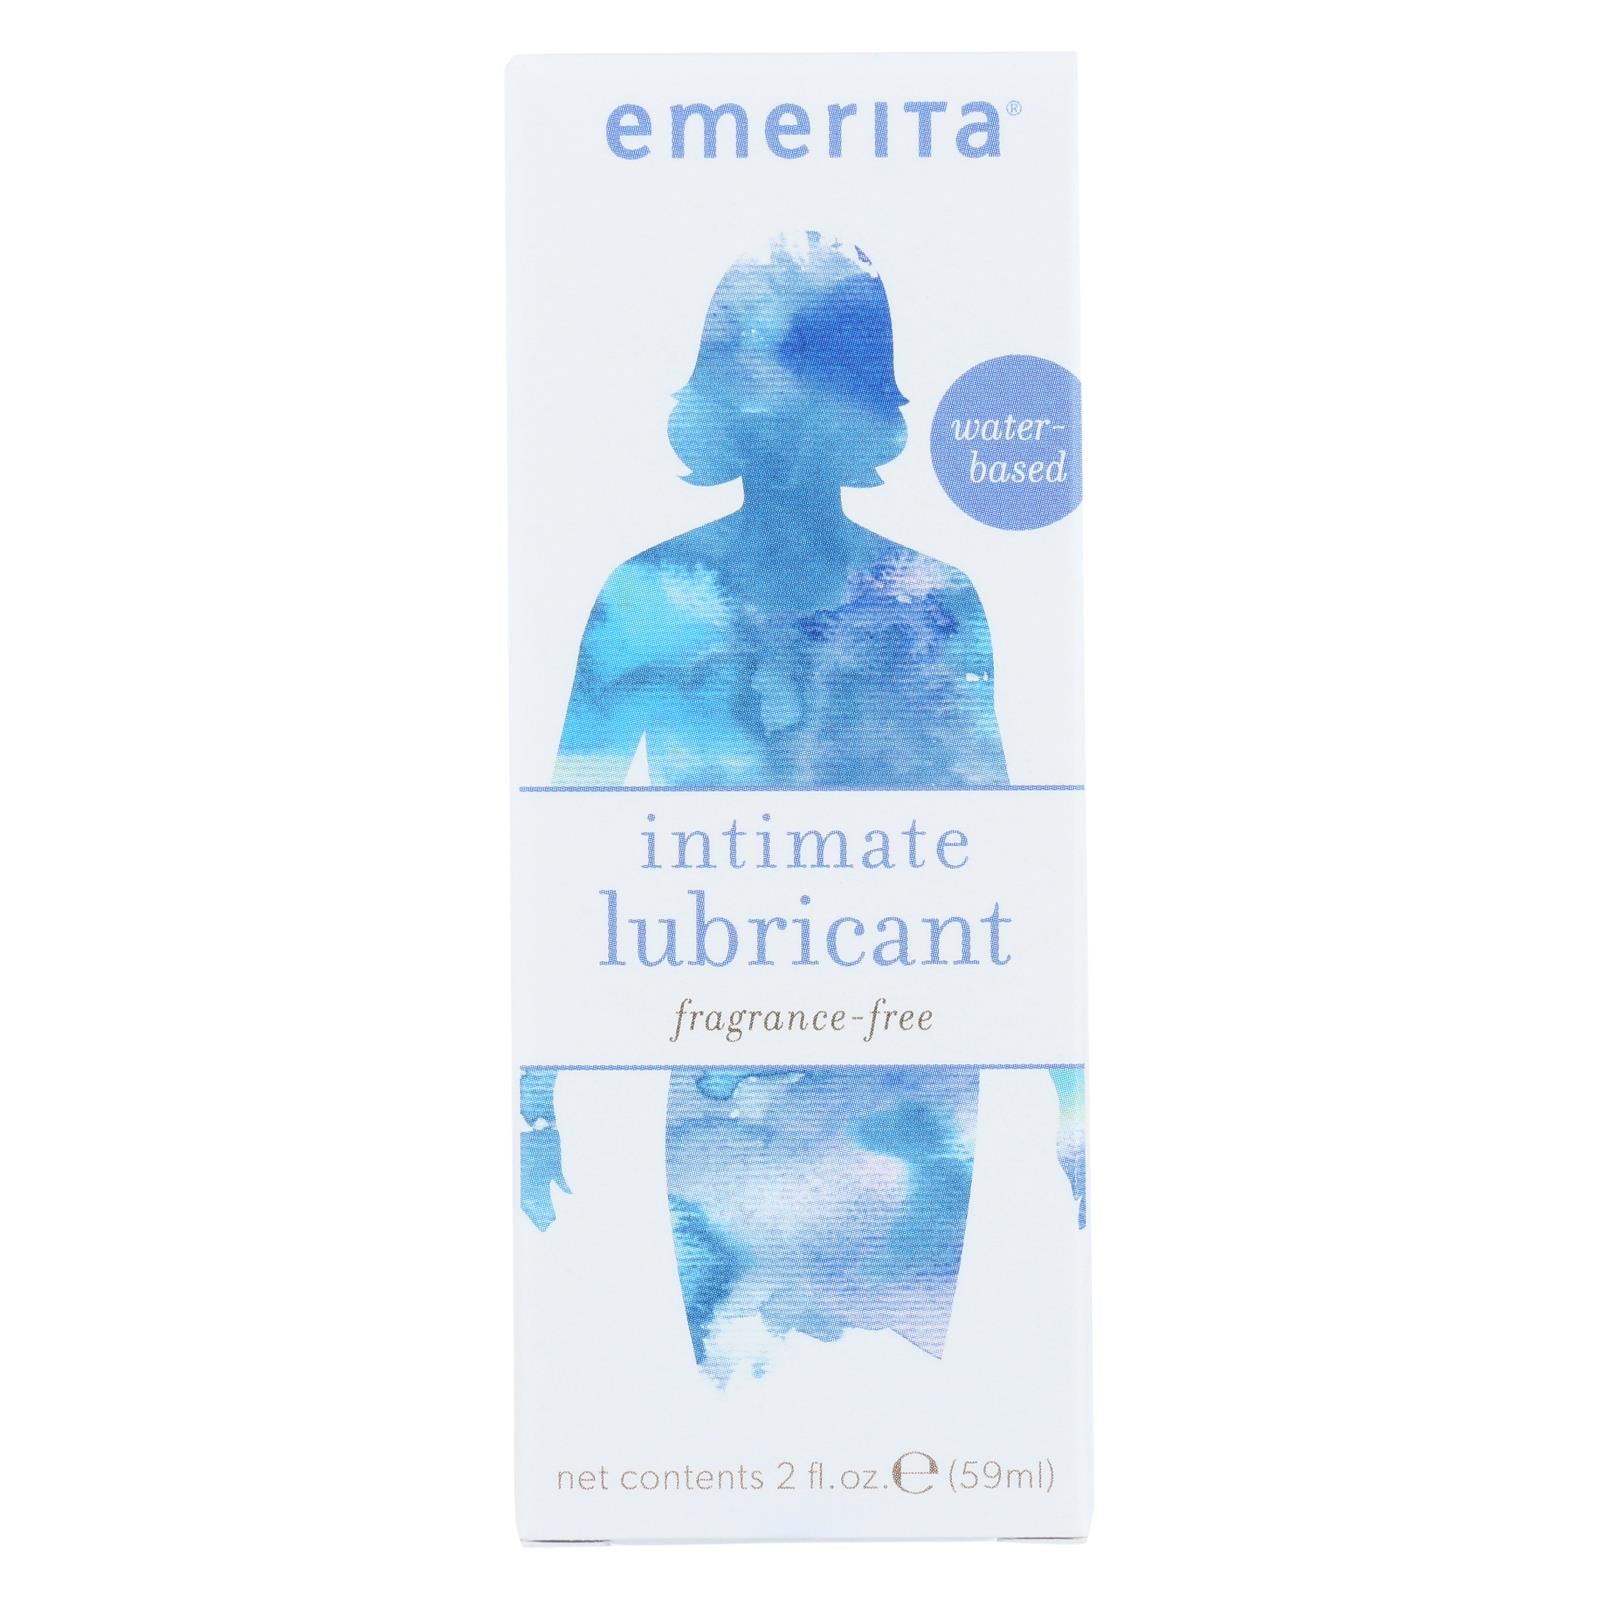 Emerita Natural Lubricant With Vitamin E - 2 Fl Oz